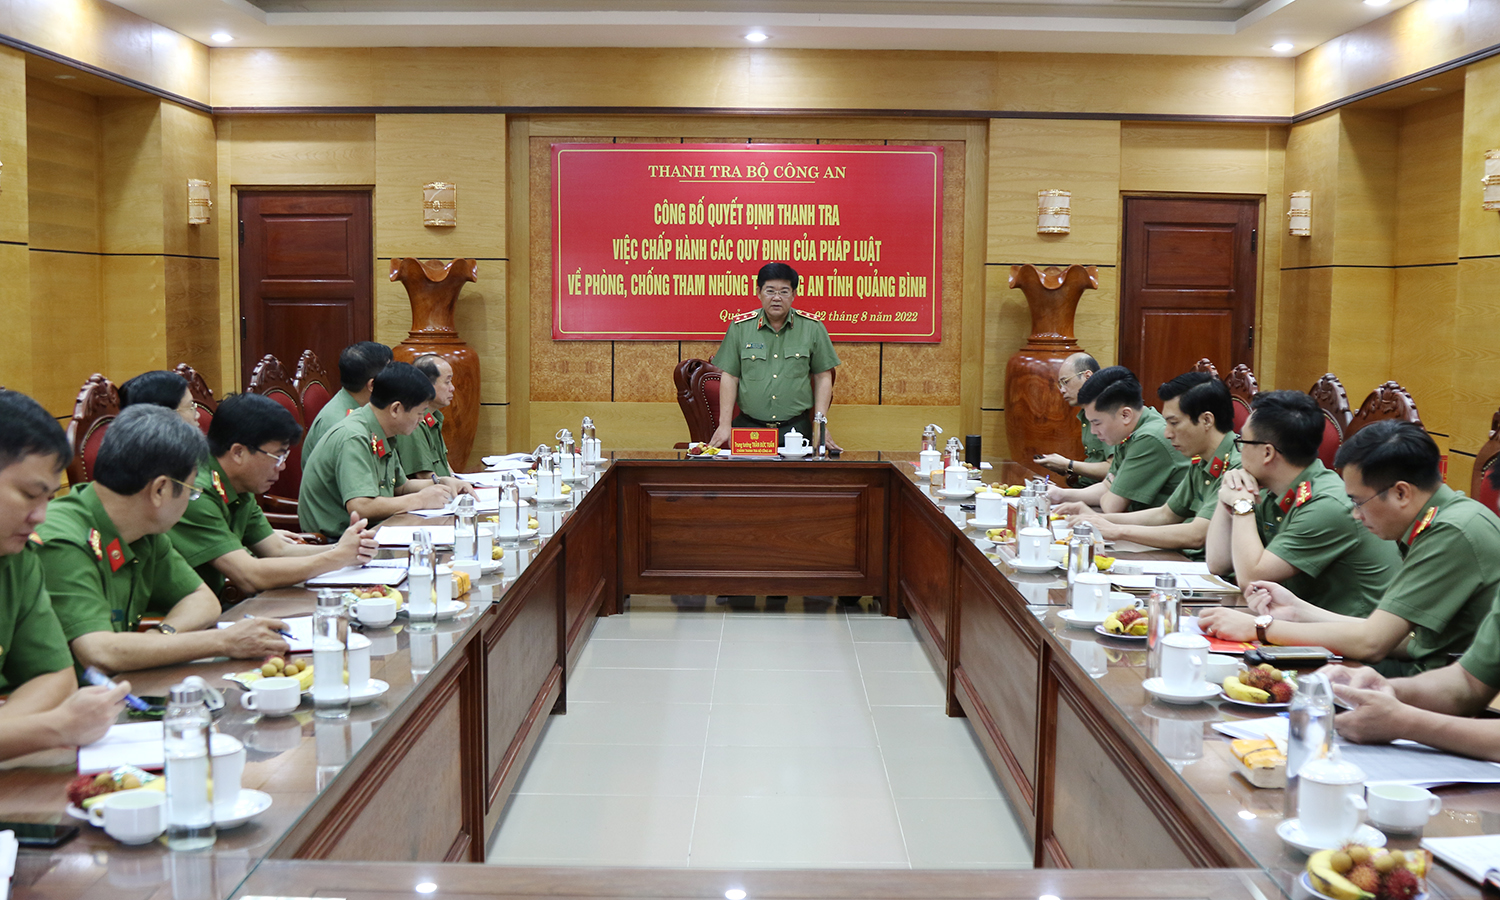 Trung tướng Trần Đức Tuấn, Chánh Thanh tra Bộ Công an phát biểu tại buổi lễ công bố quyết định thanh tra tại Công an tỉnh Quảng Bình.